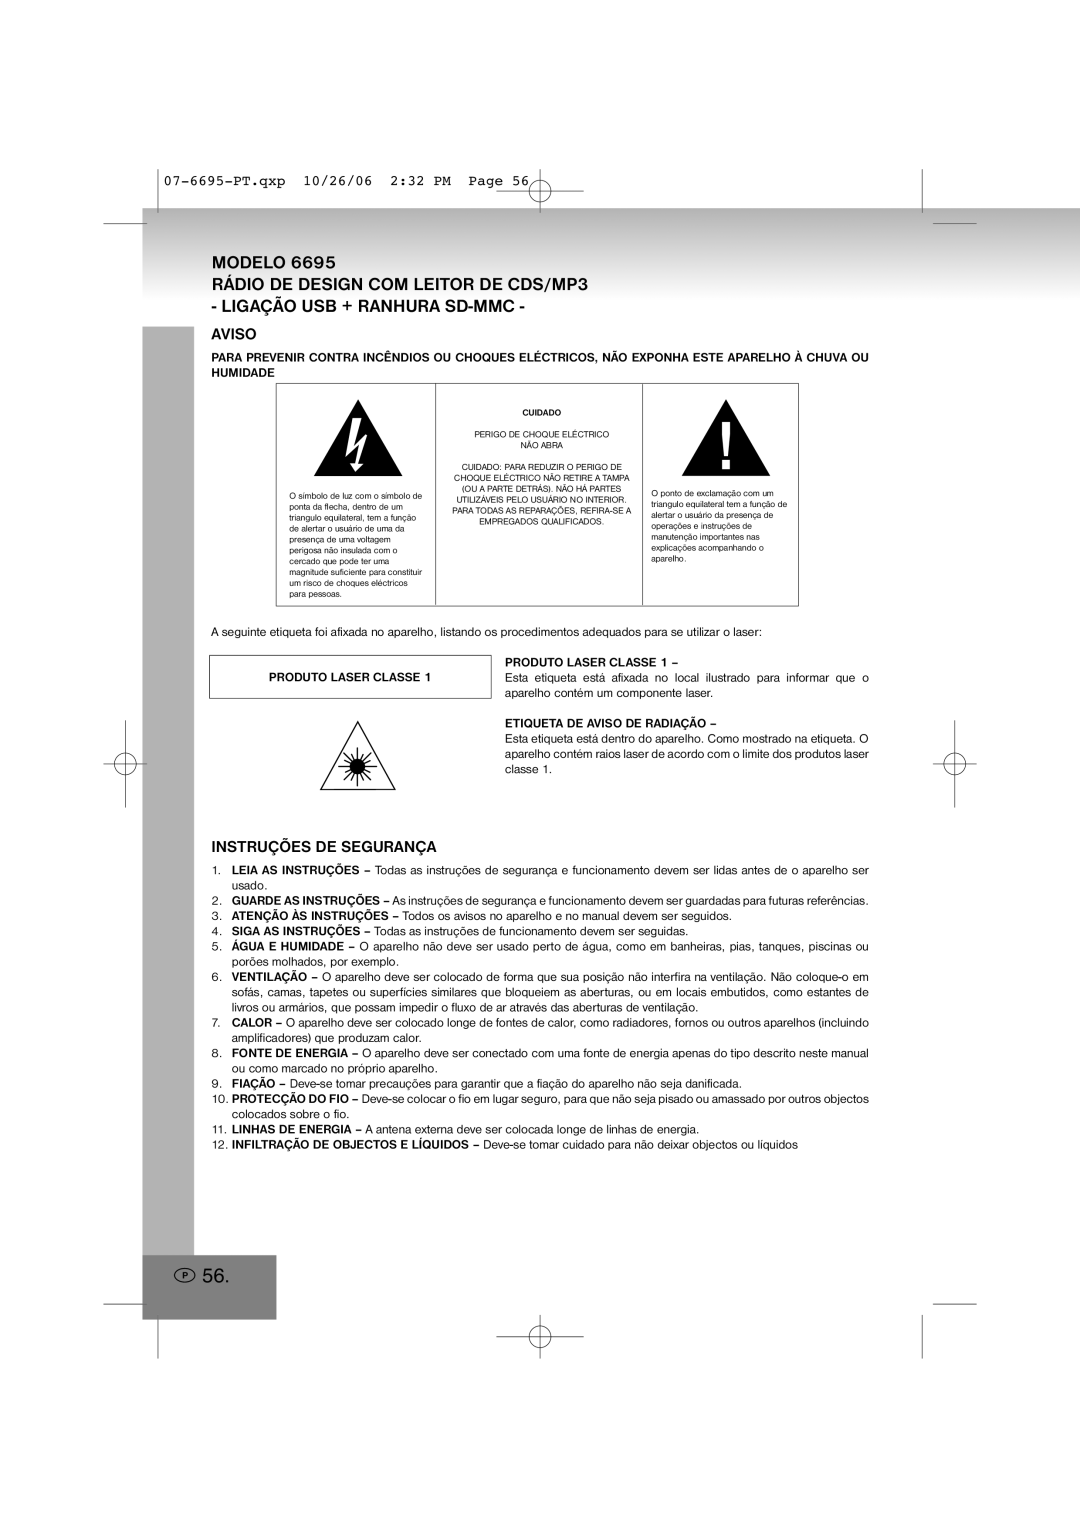 Elta manual Modelo, Aviso, Instruções De Segurança, 07-6695-PT.qxp10/26/06 2 32 PM Page 